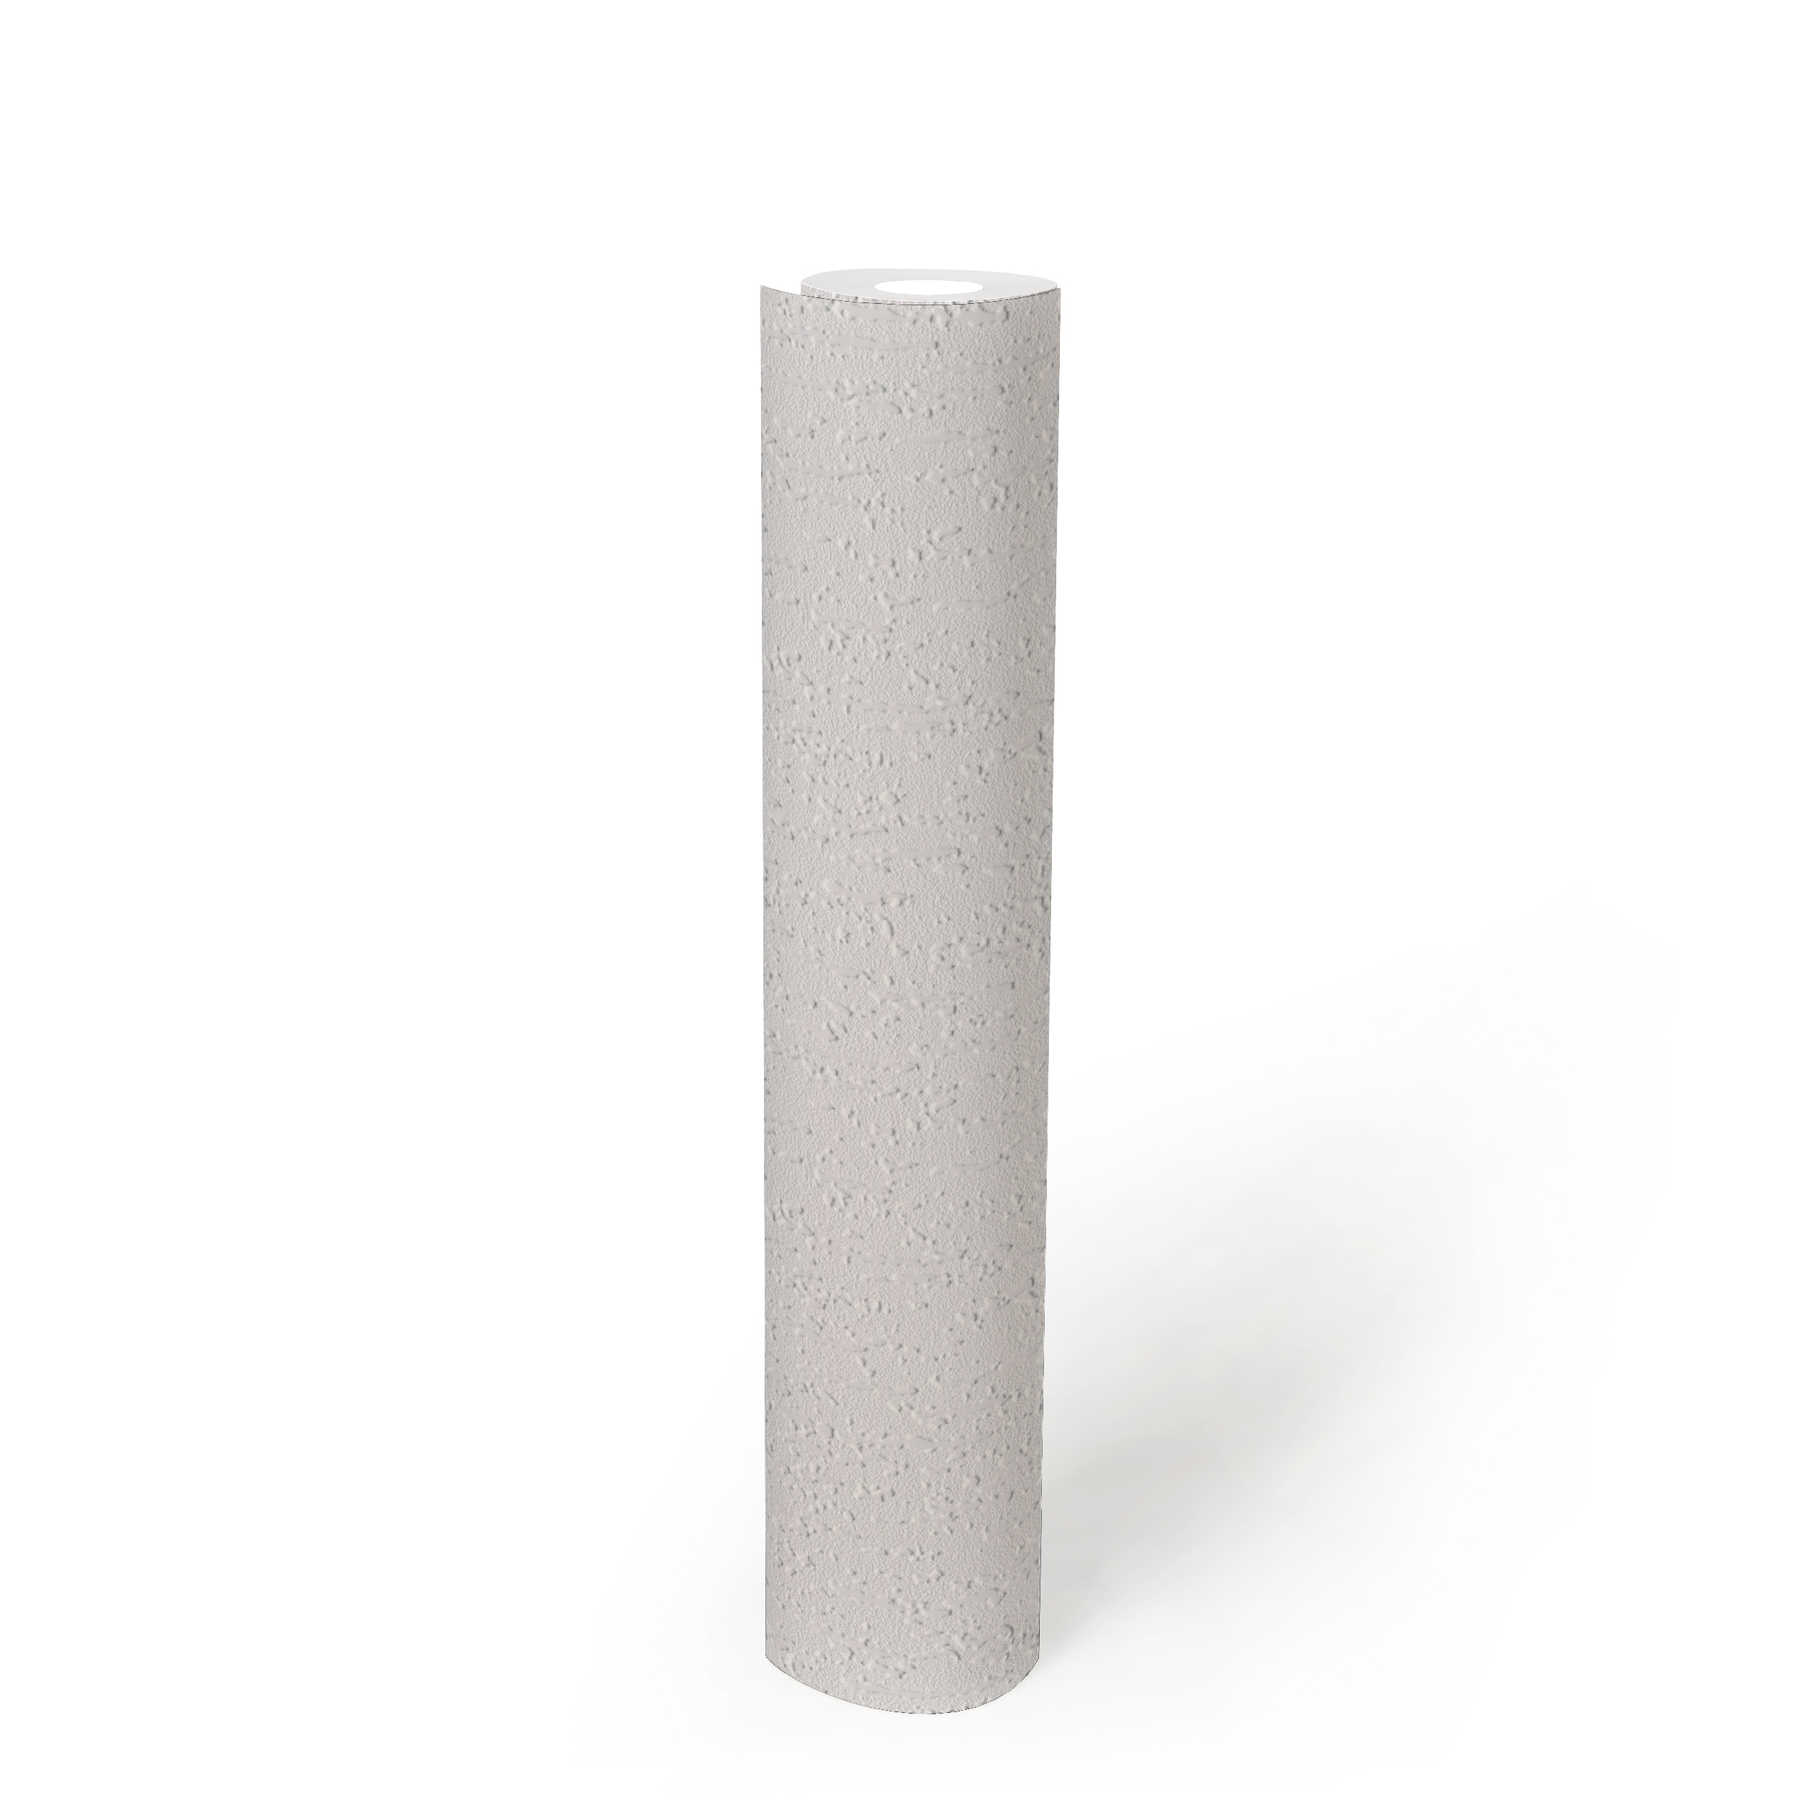             Papel pintado blanco no tejido de aspecto rugoso con estructura 3D
        